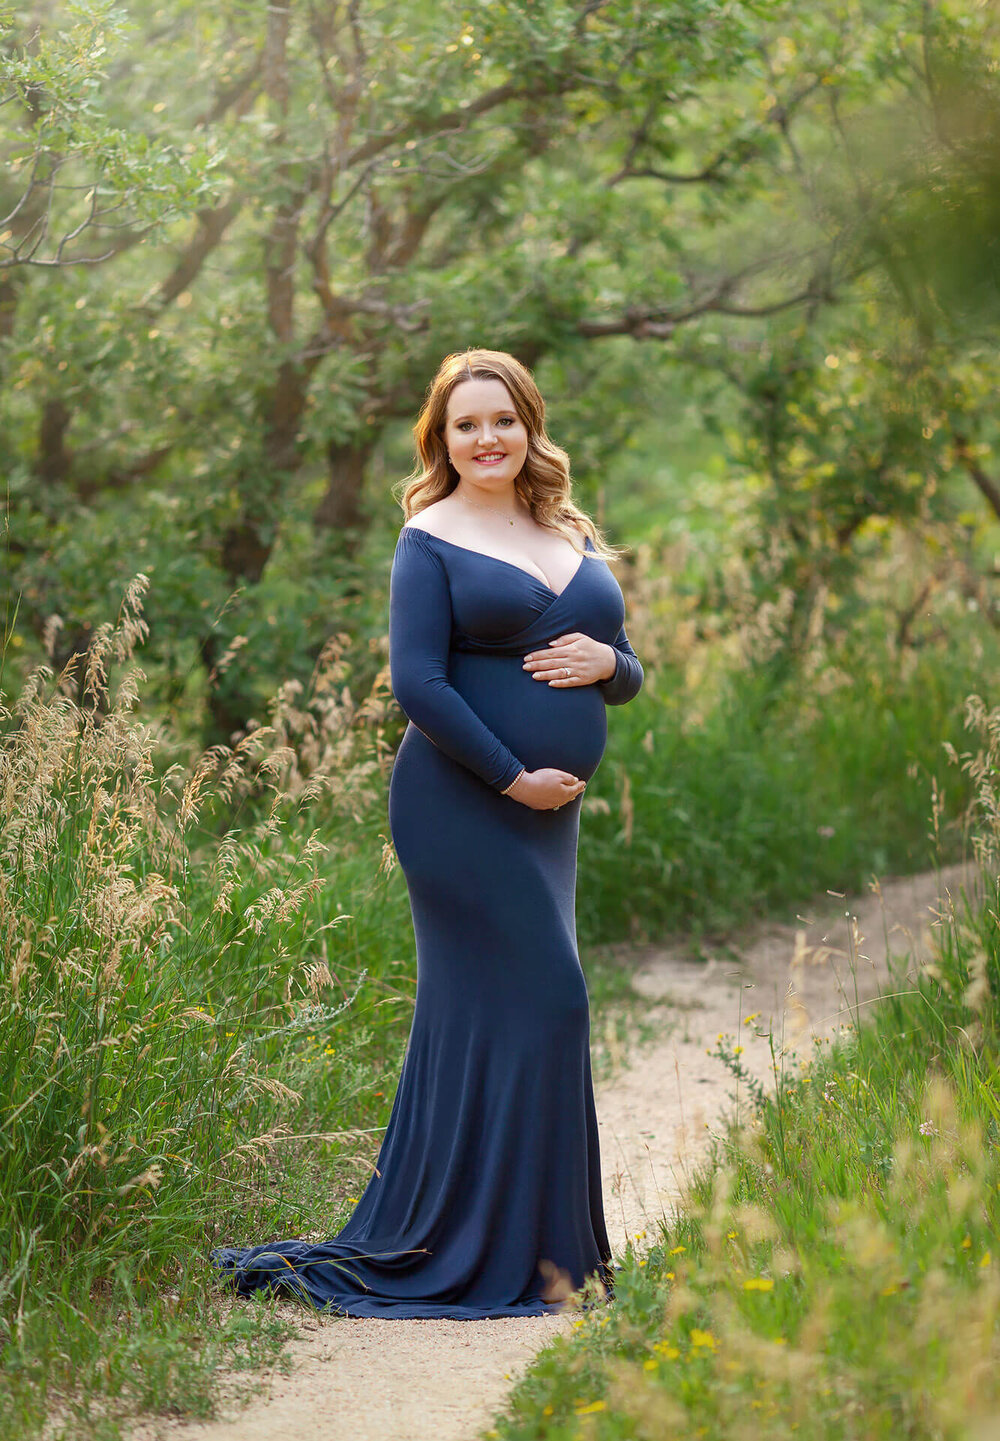 best pregnancy photoshoot colorado springs - 1.jpg